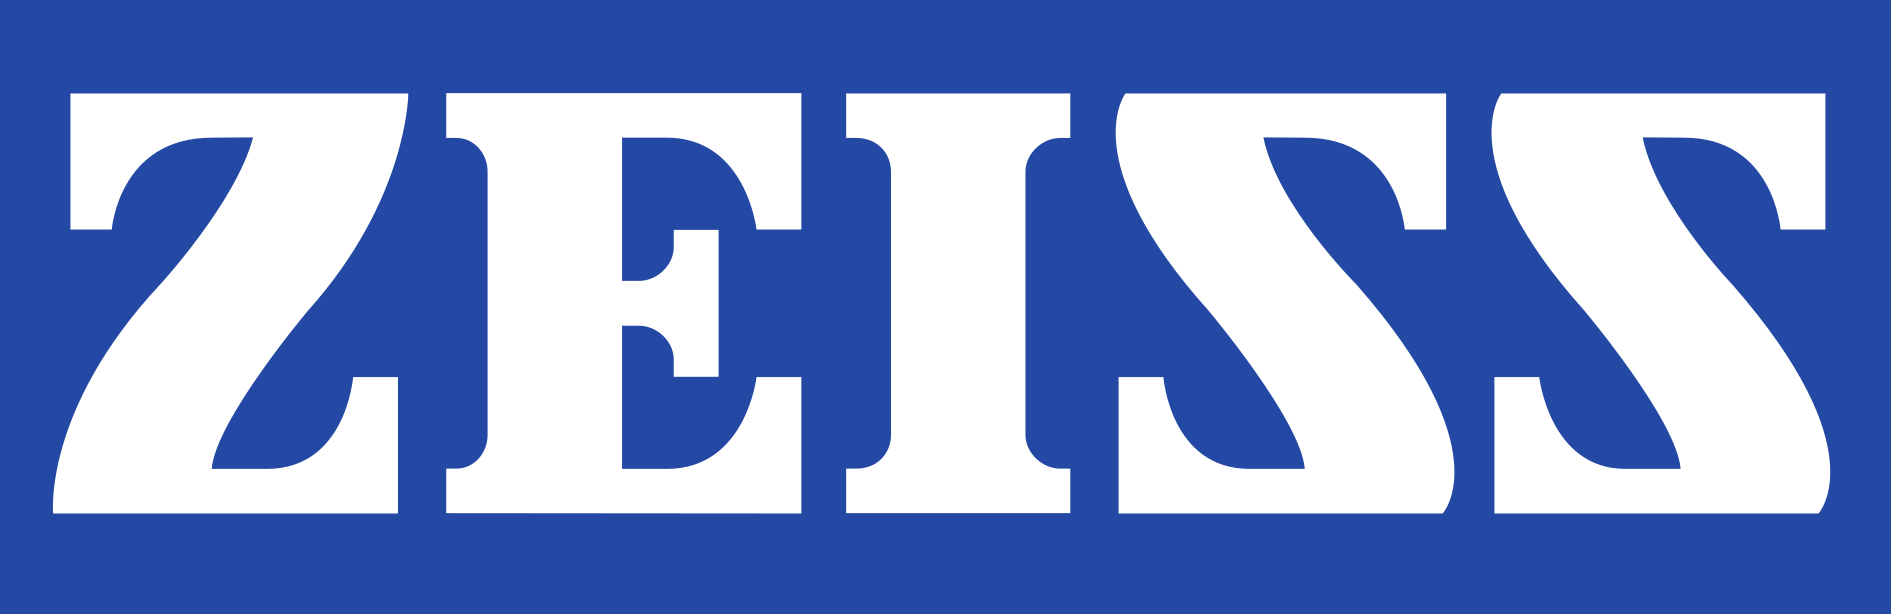 Zeiss Logo - Zeiss Logos